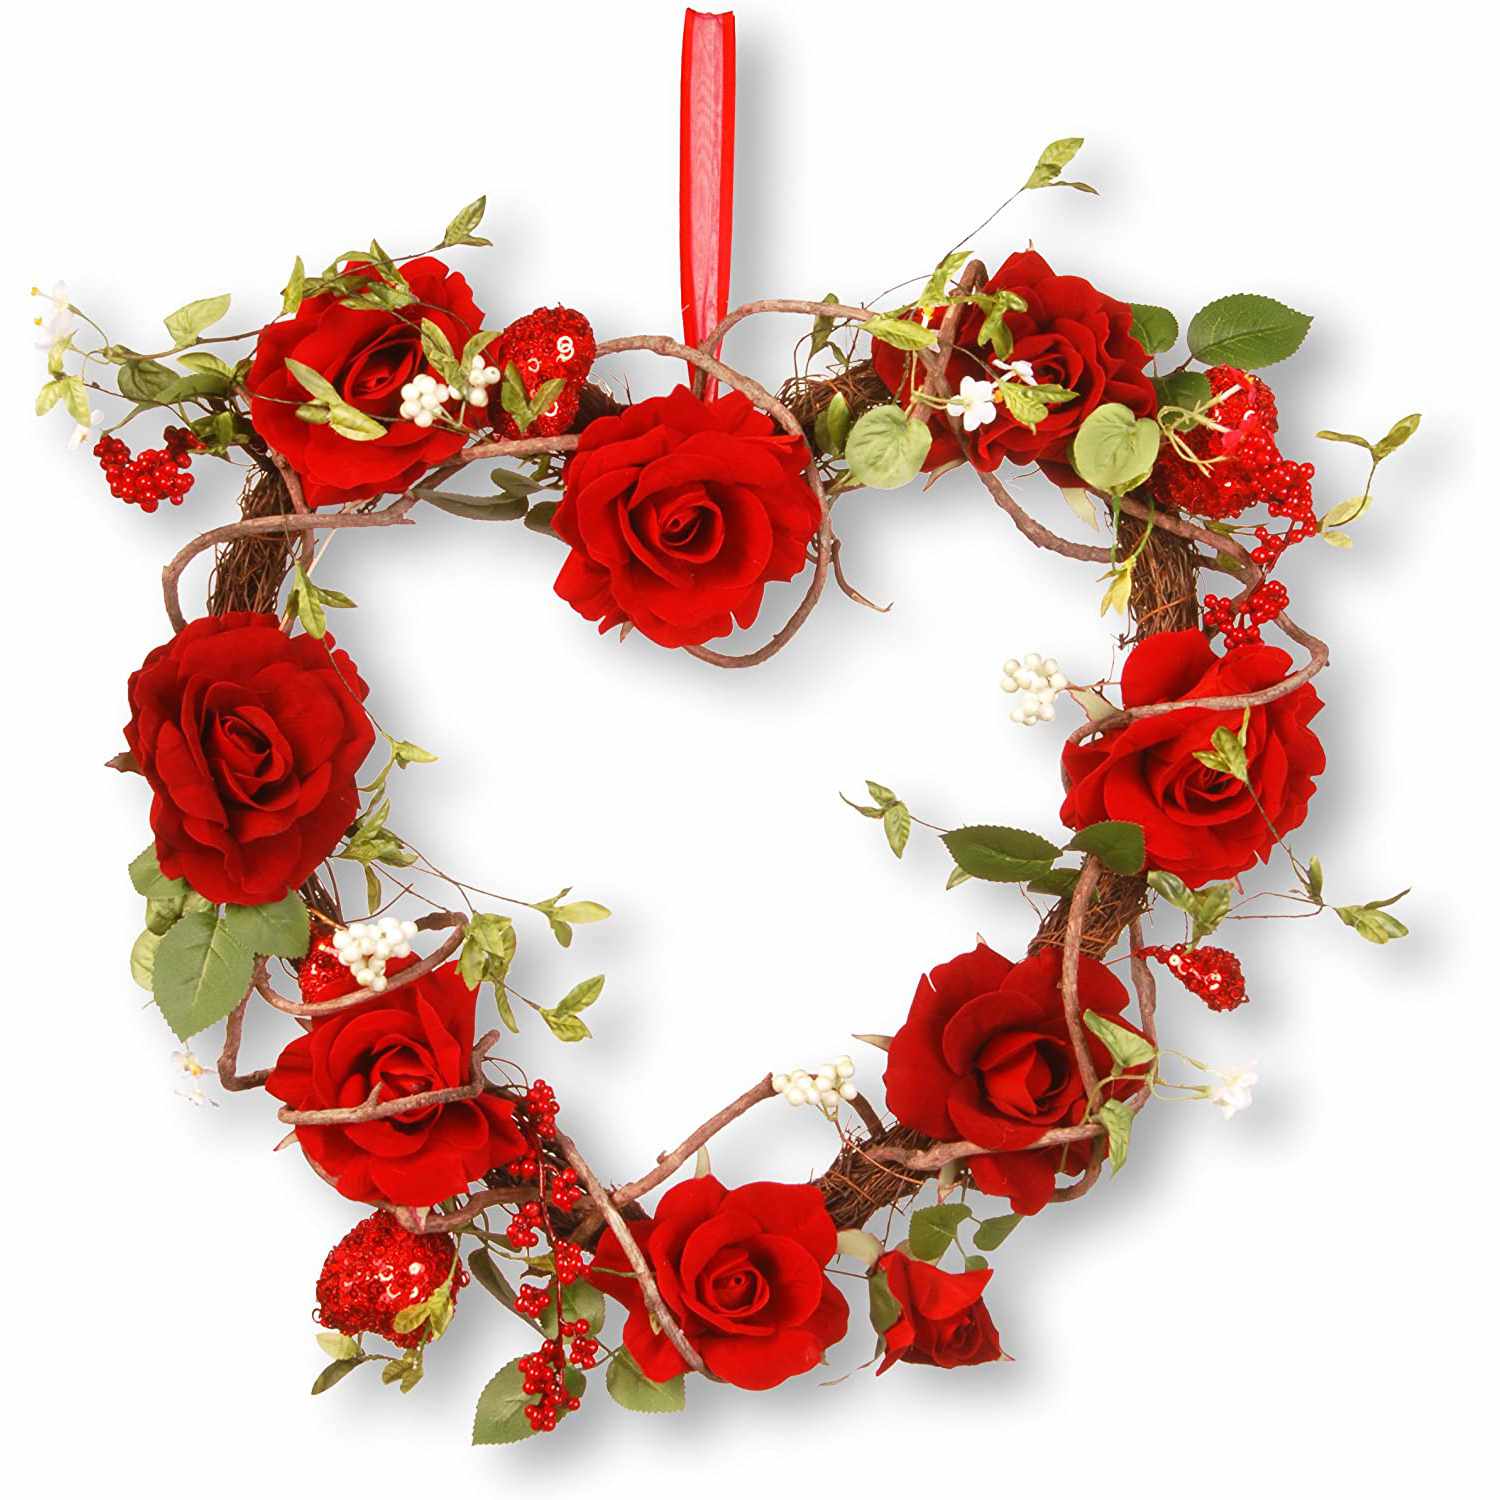 Valentine's Day wreaths